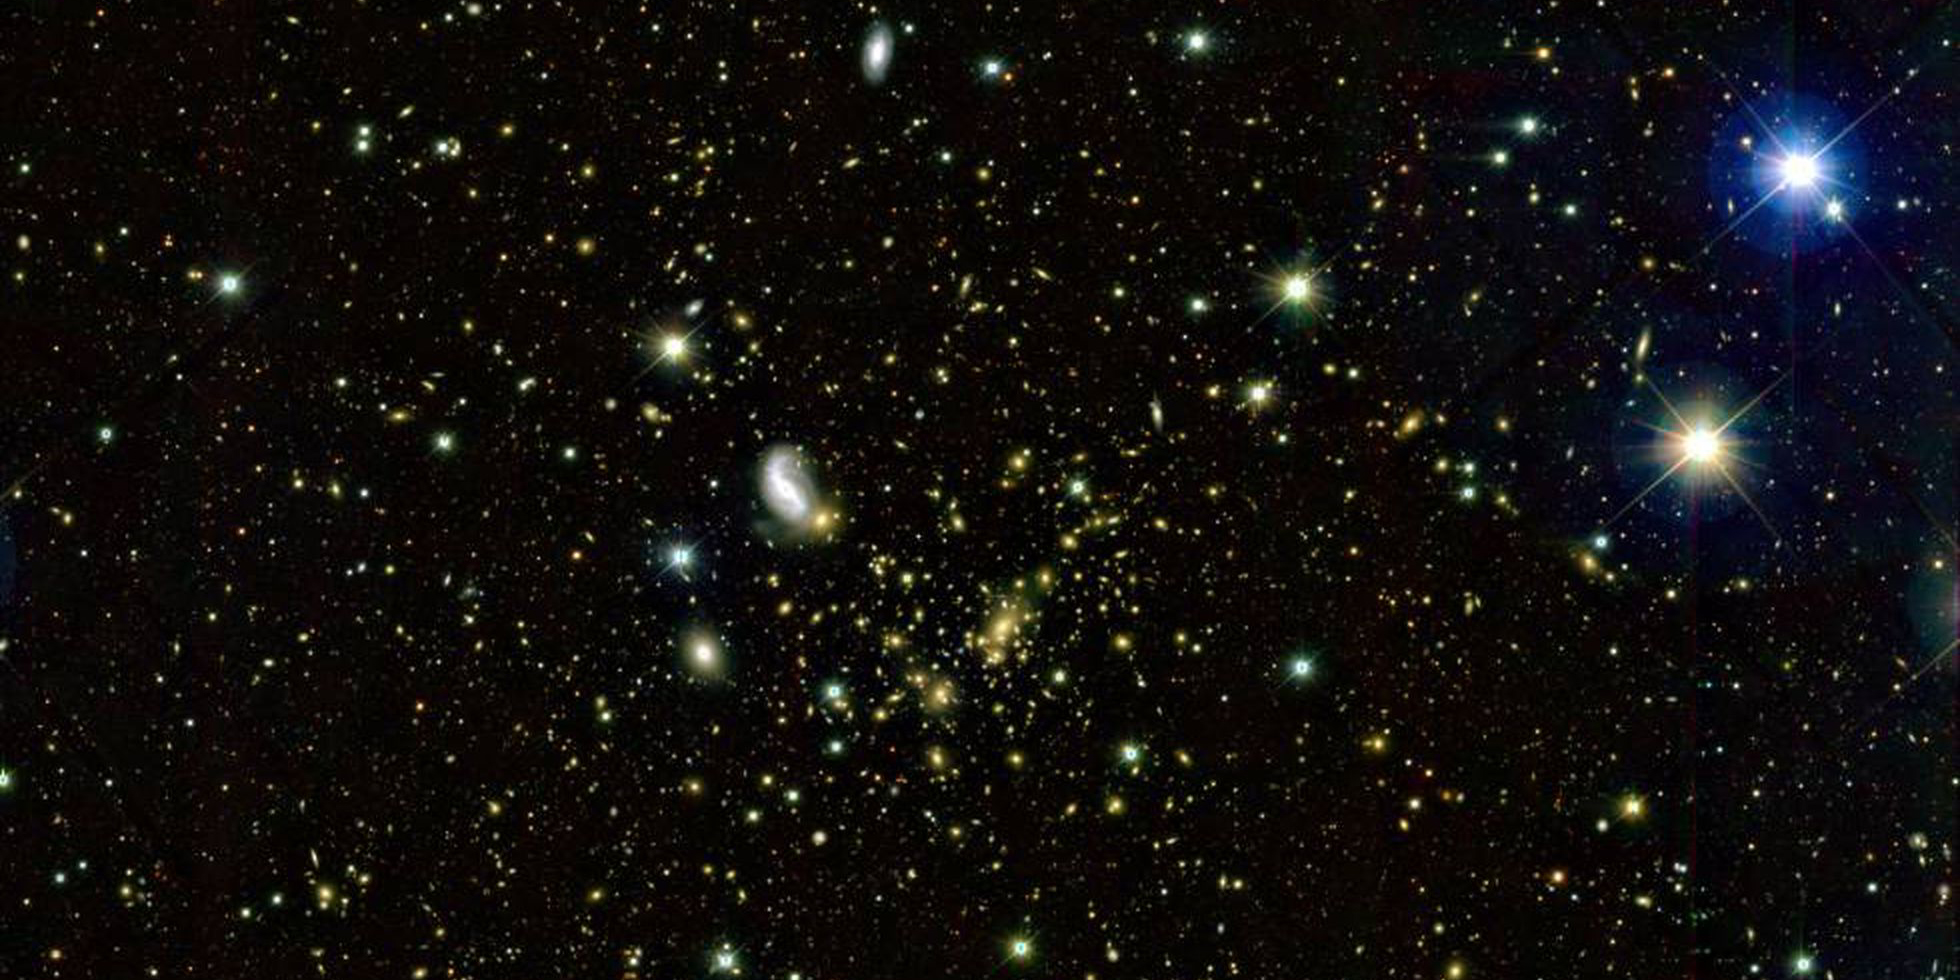 El universo tiene paredes invisibles que actúan como límites entre las galaxias, proponen científicos | El Imparcial de Oaxaca